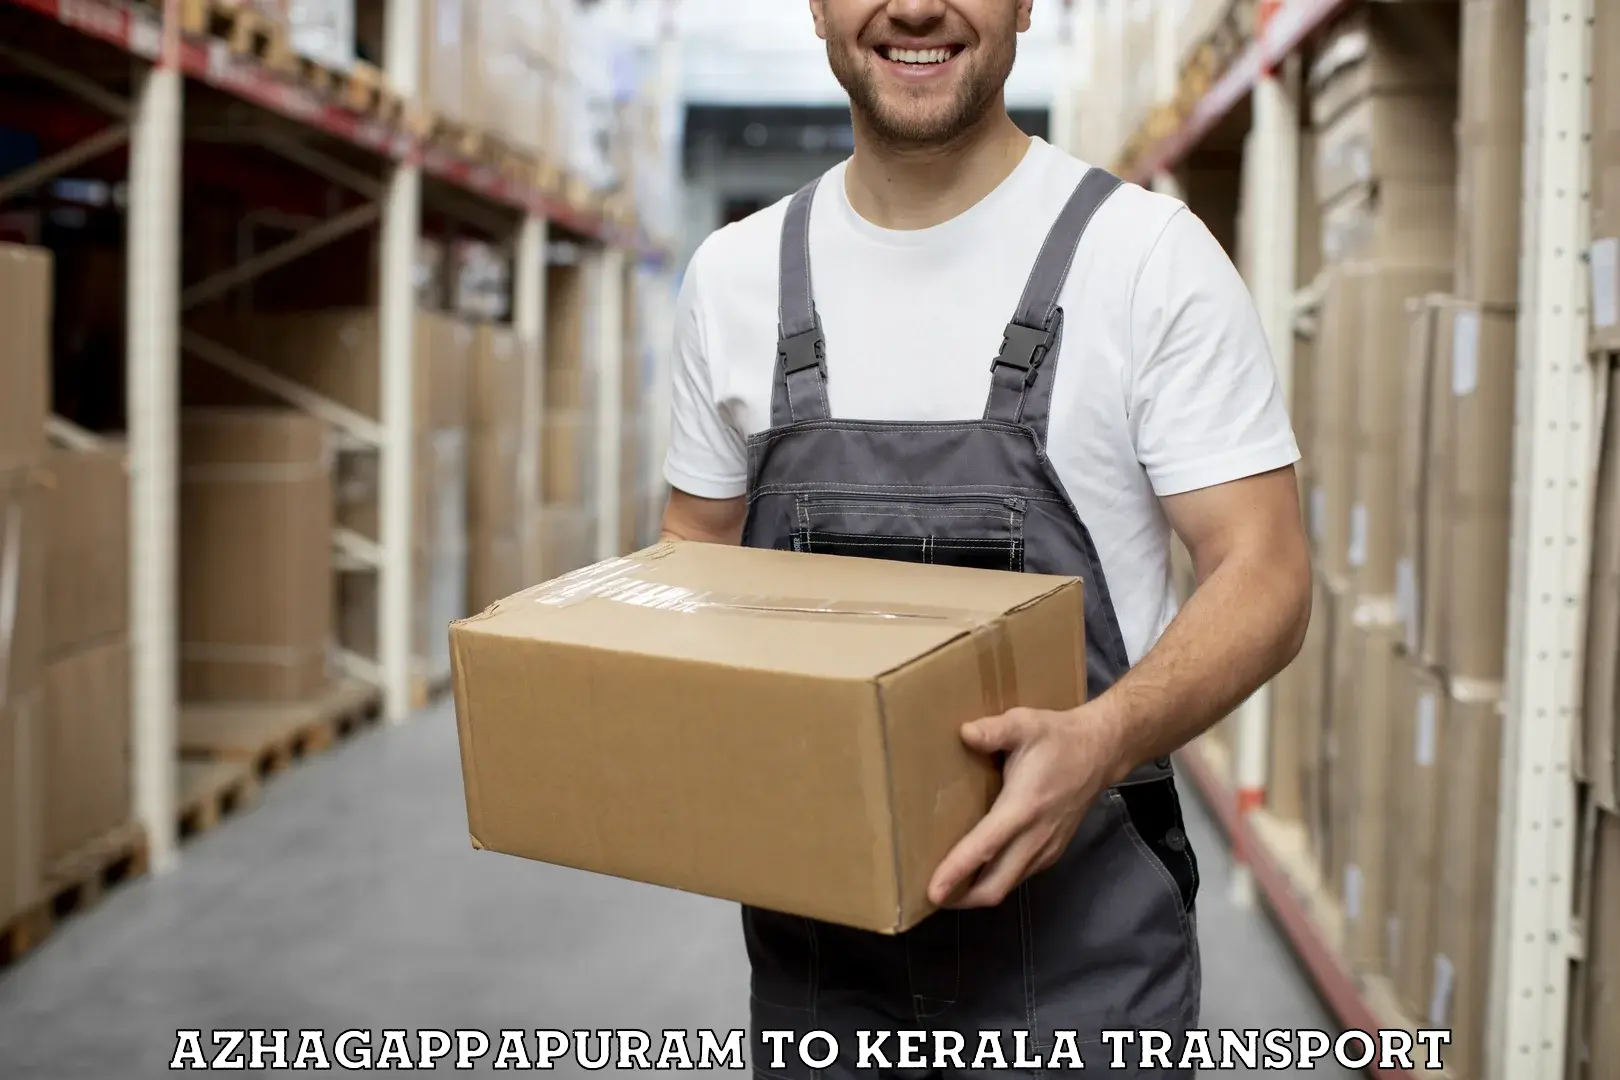 Online transport service Azhagappapuram to Karunagappally